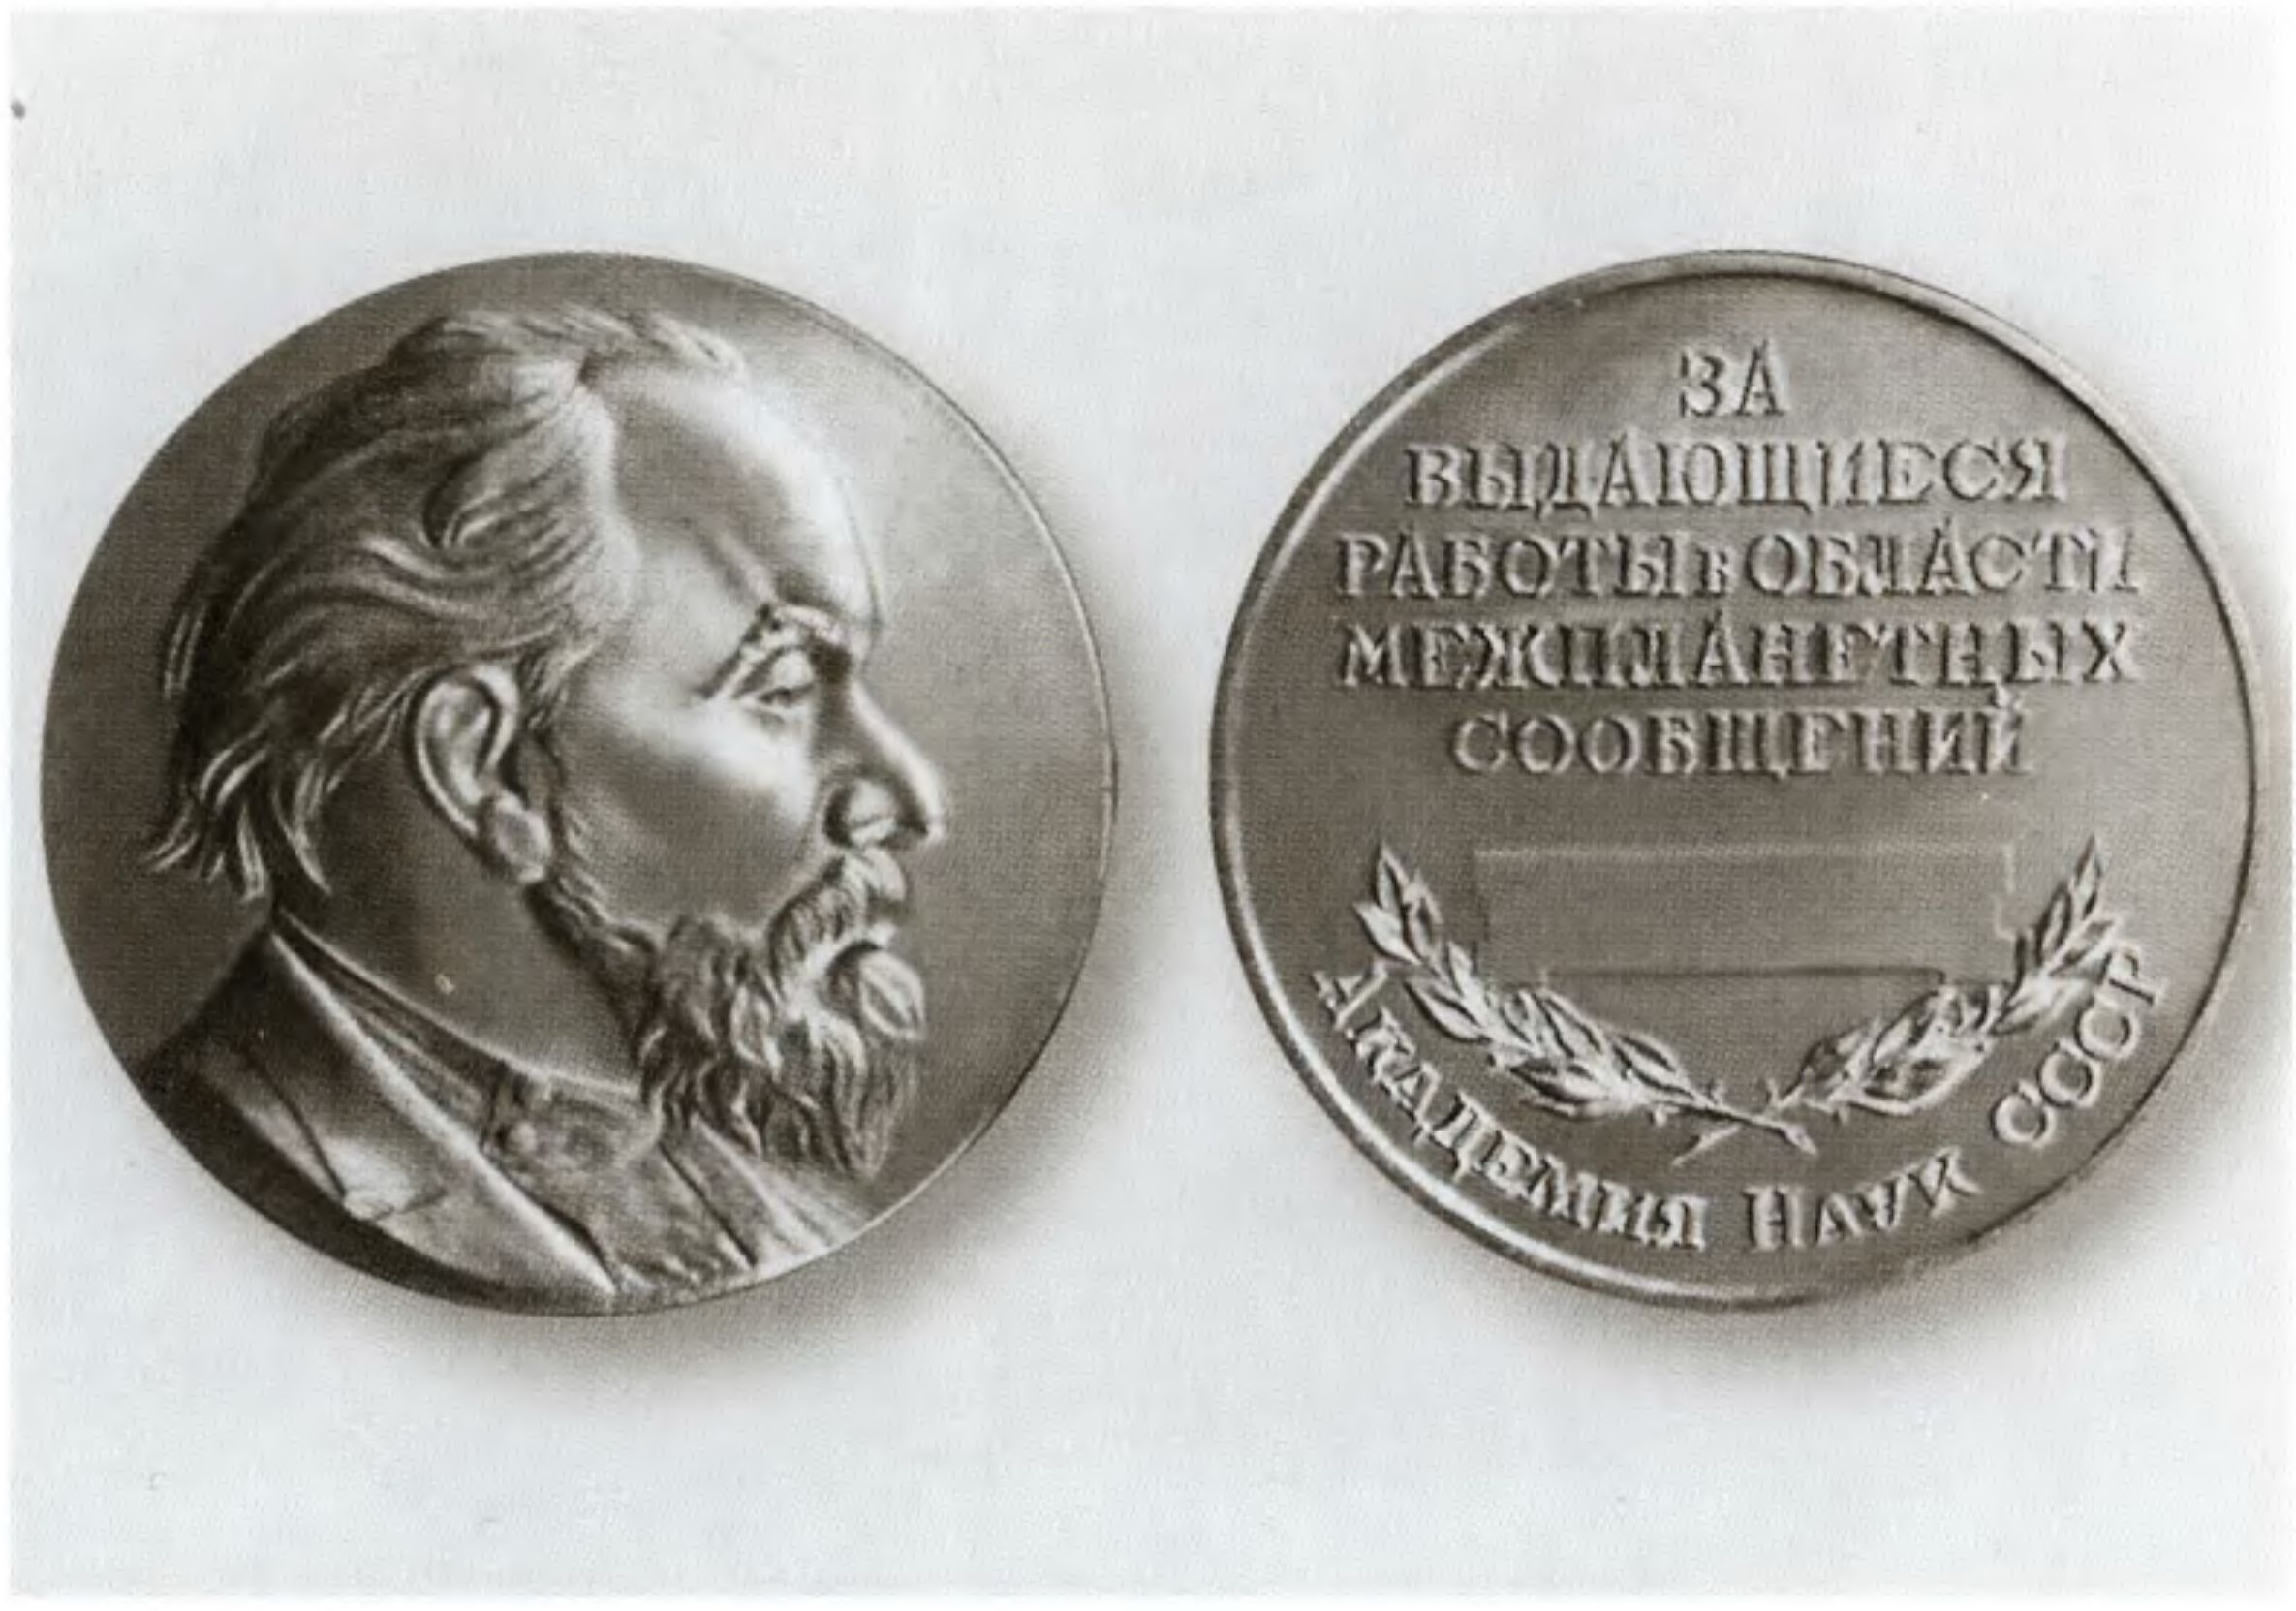 Золотая медаль им. К.Э. Циолковского, учрежденная Академией наук СССР